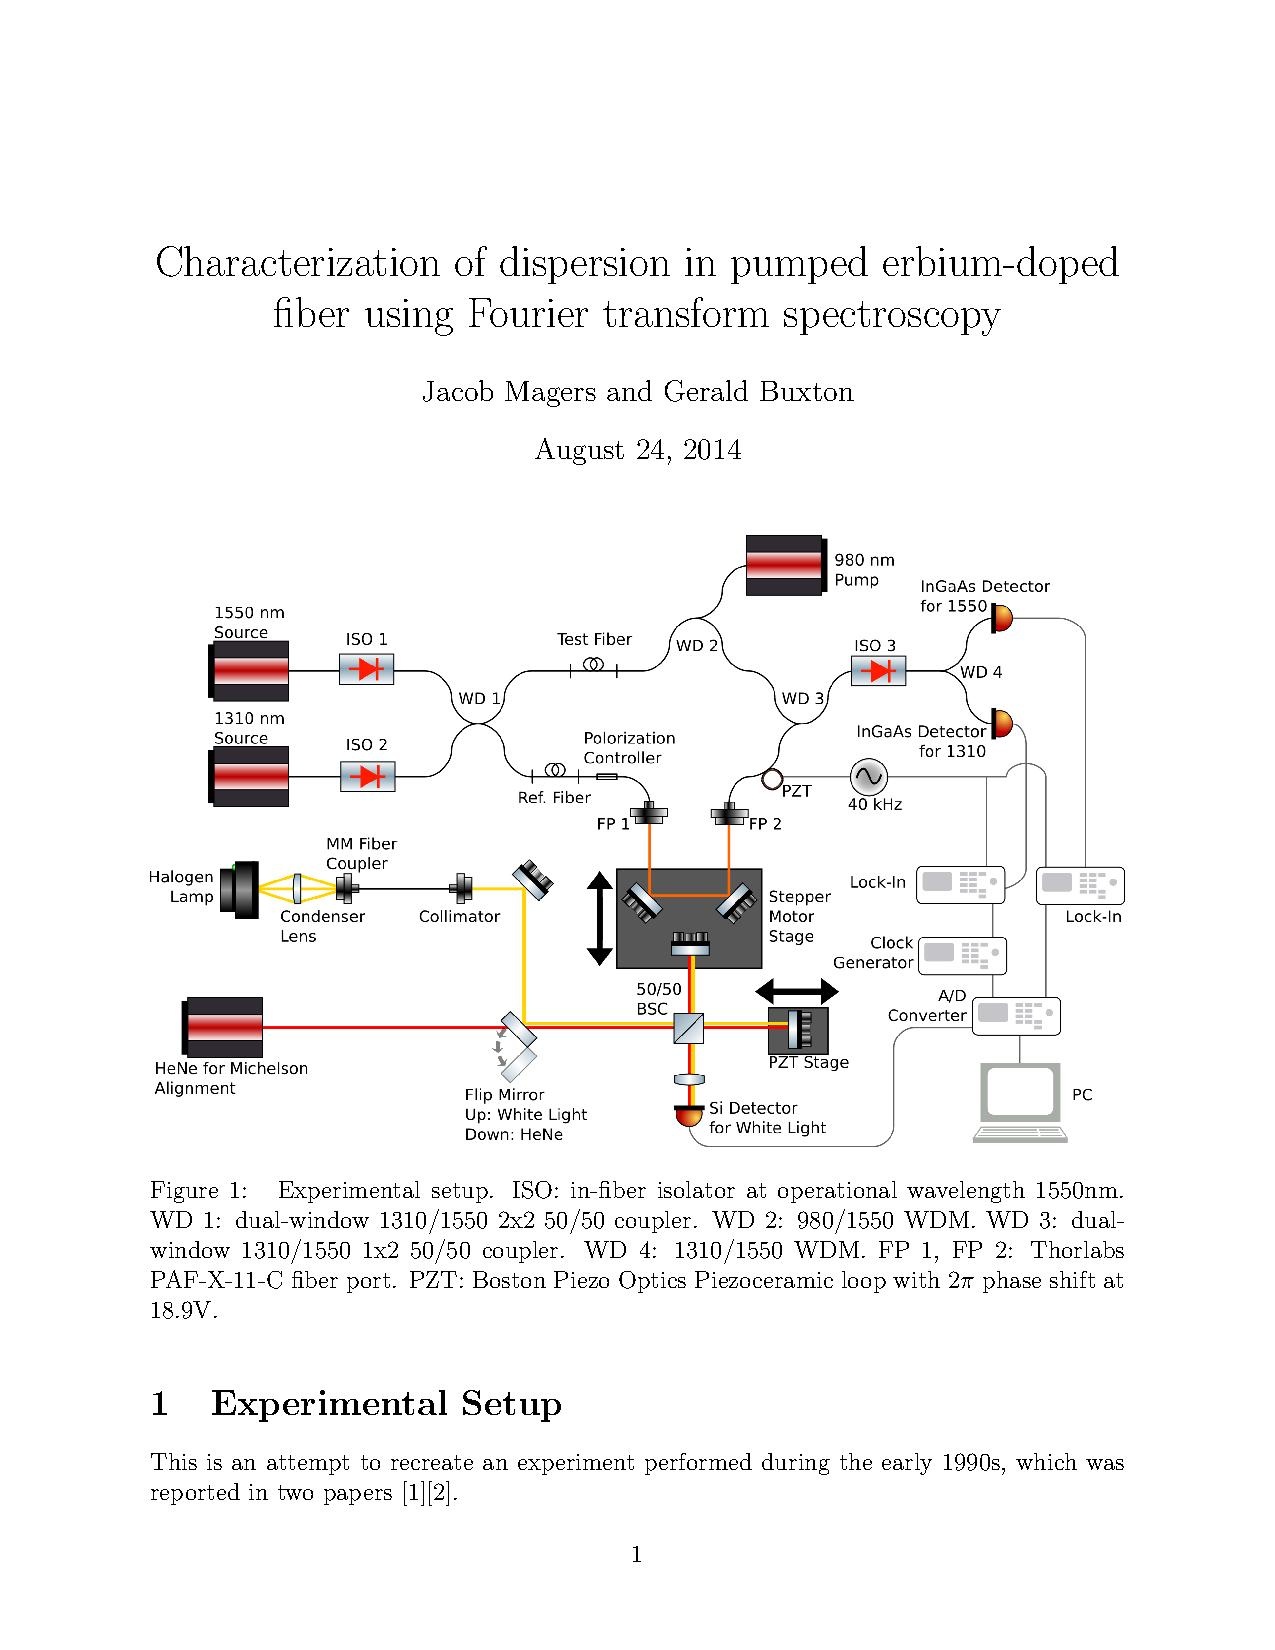 DispersionWriteup (1).pdf